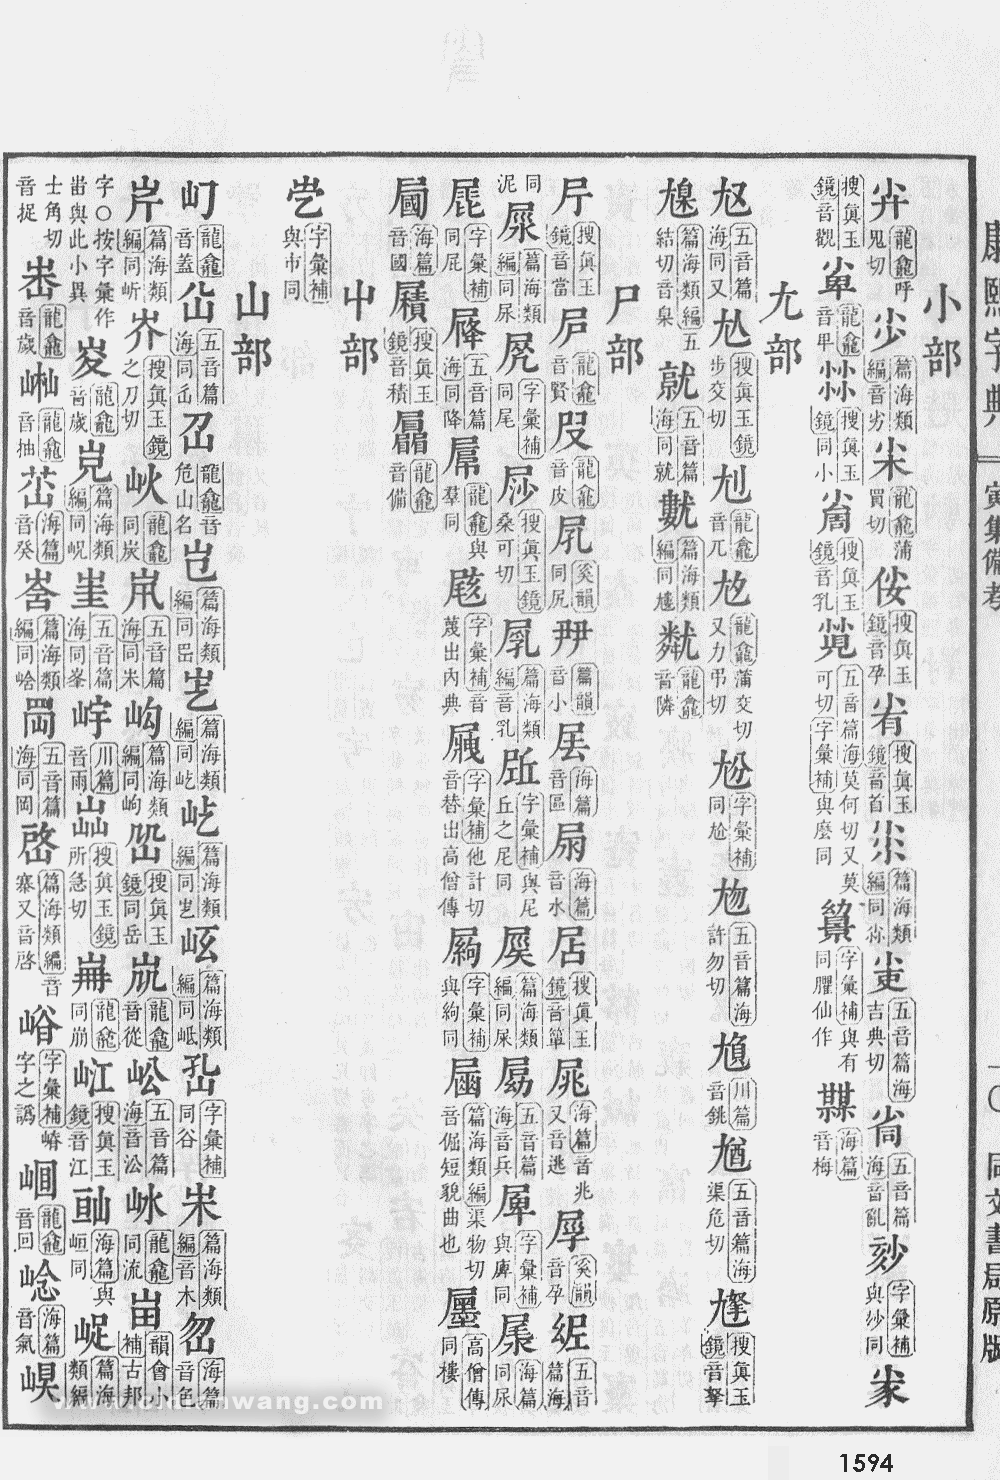 康熙字典掃描版第1594頁